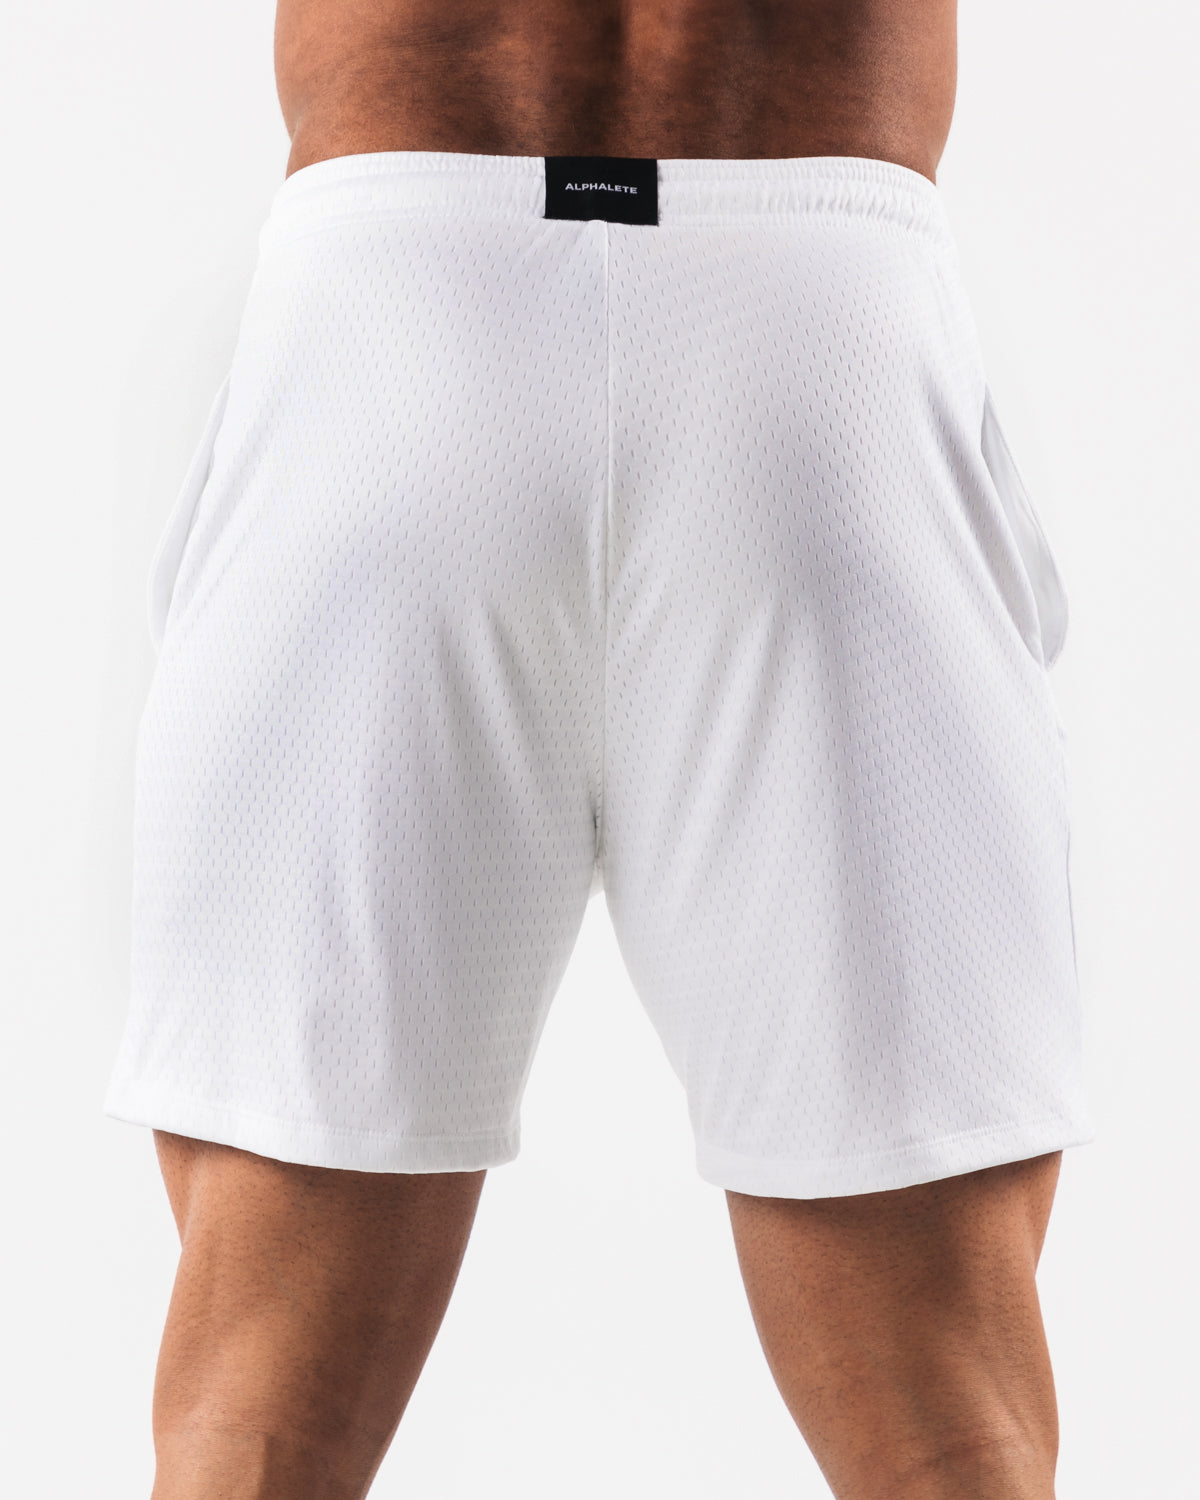 white mesh shorts-4